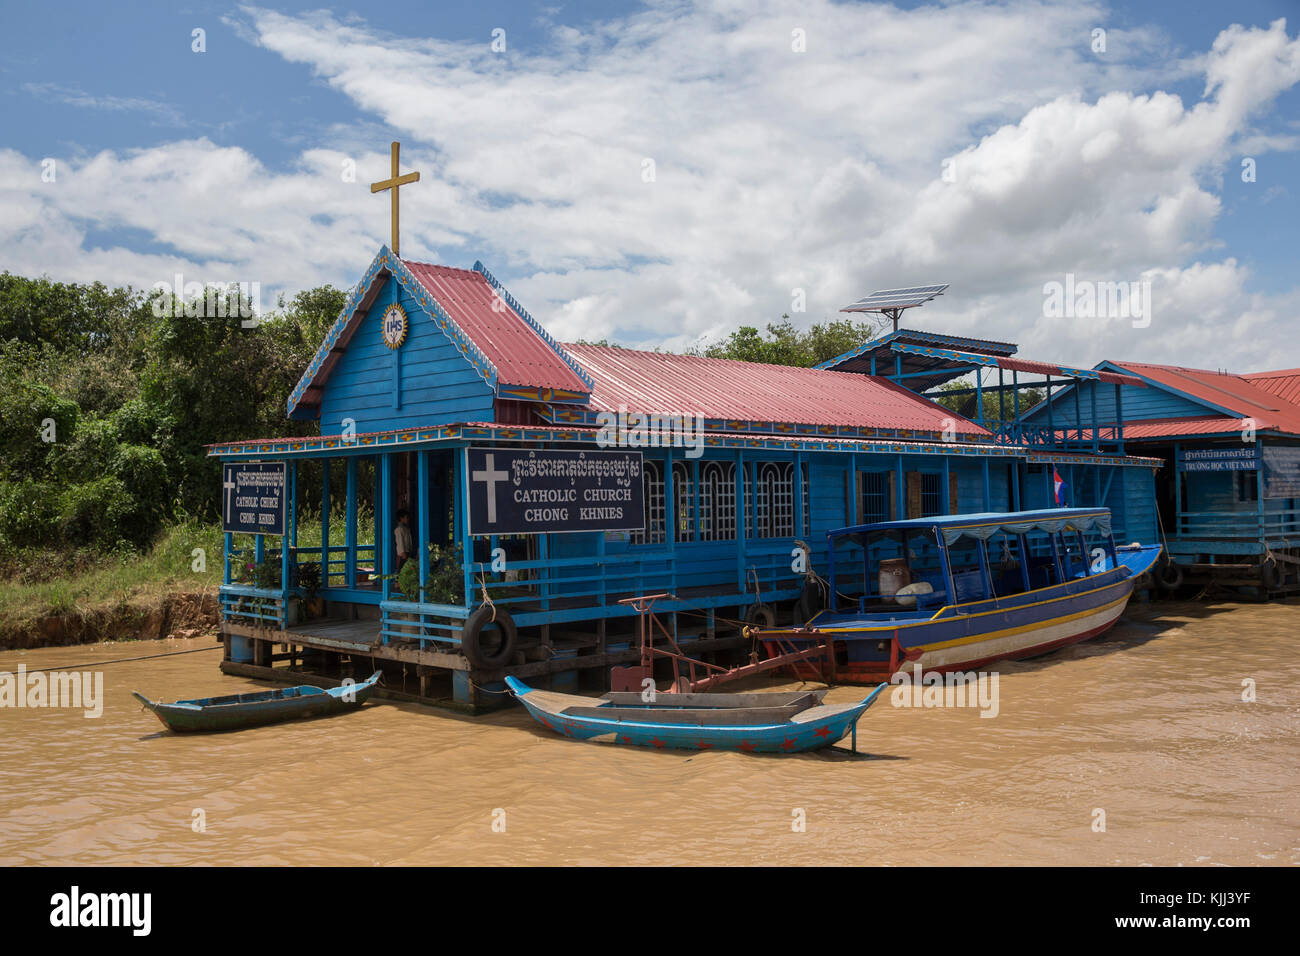 Chong Khnies église catholique flottant sur le lac Tonlé Sap. Le Cambodge. Banque D'Images